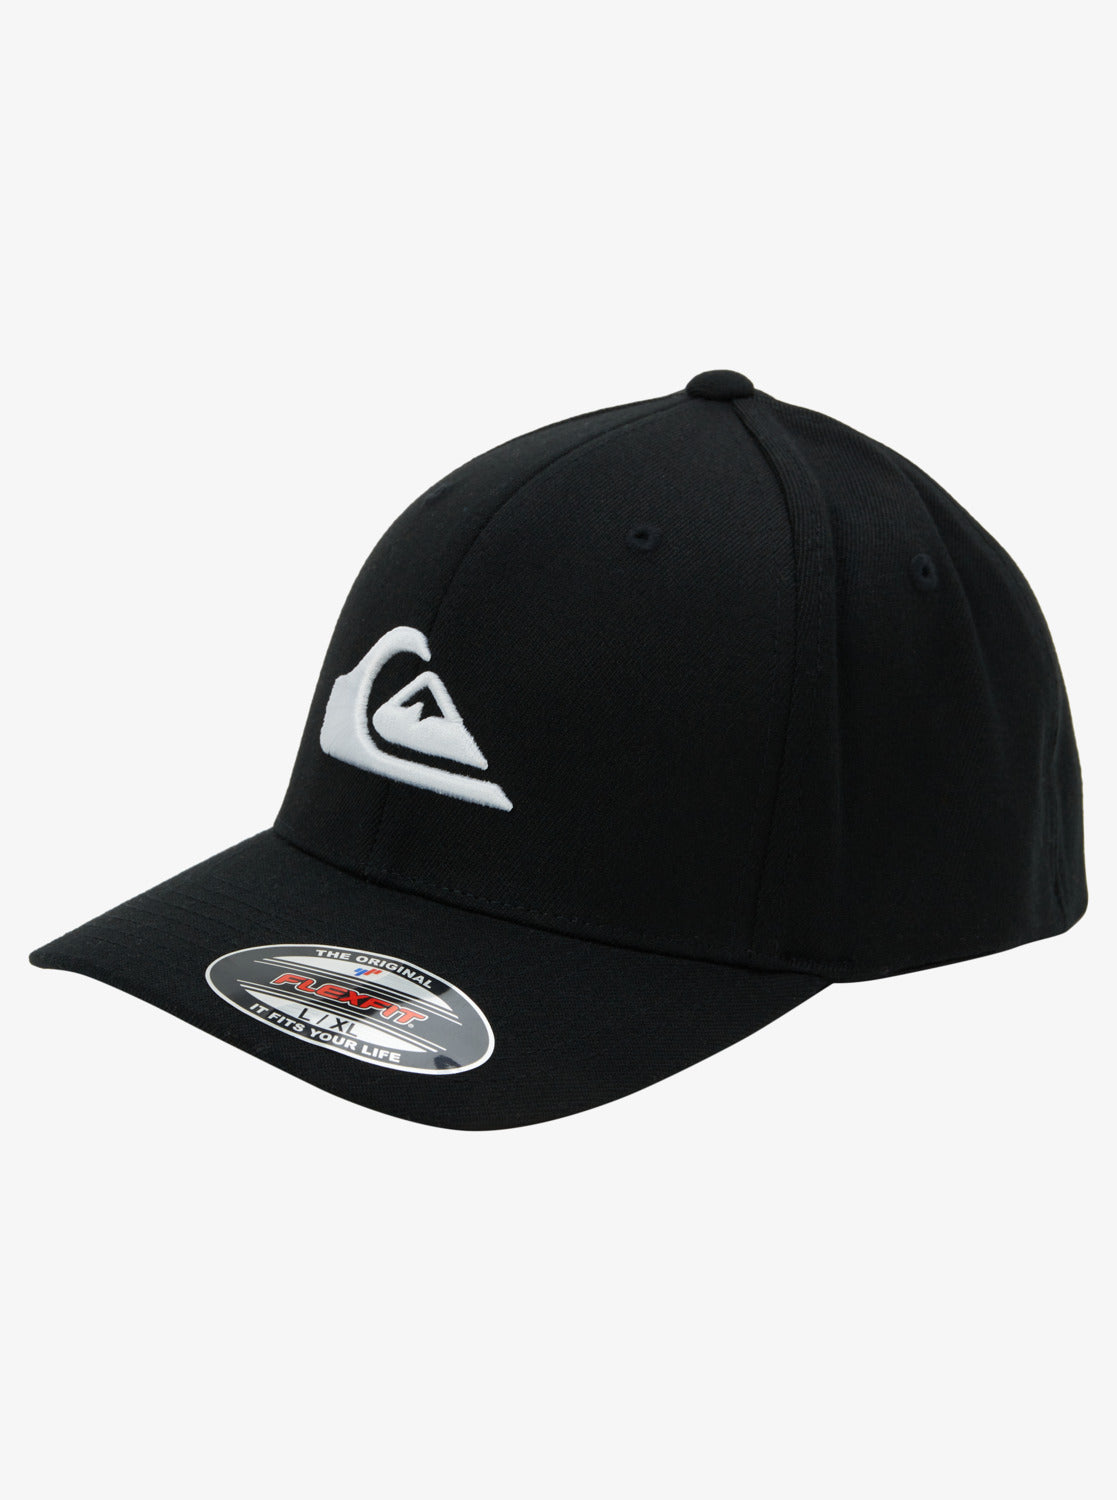 Quiksilver Mountain and Wave Flexfit Cap Black